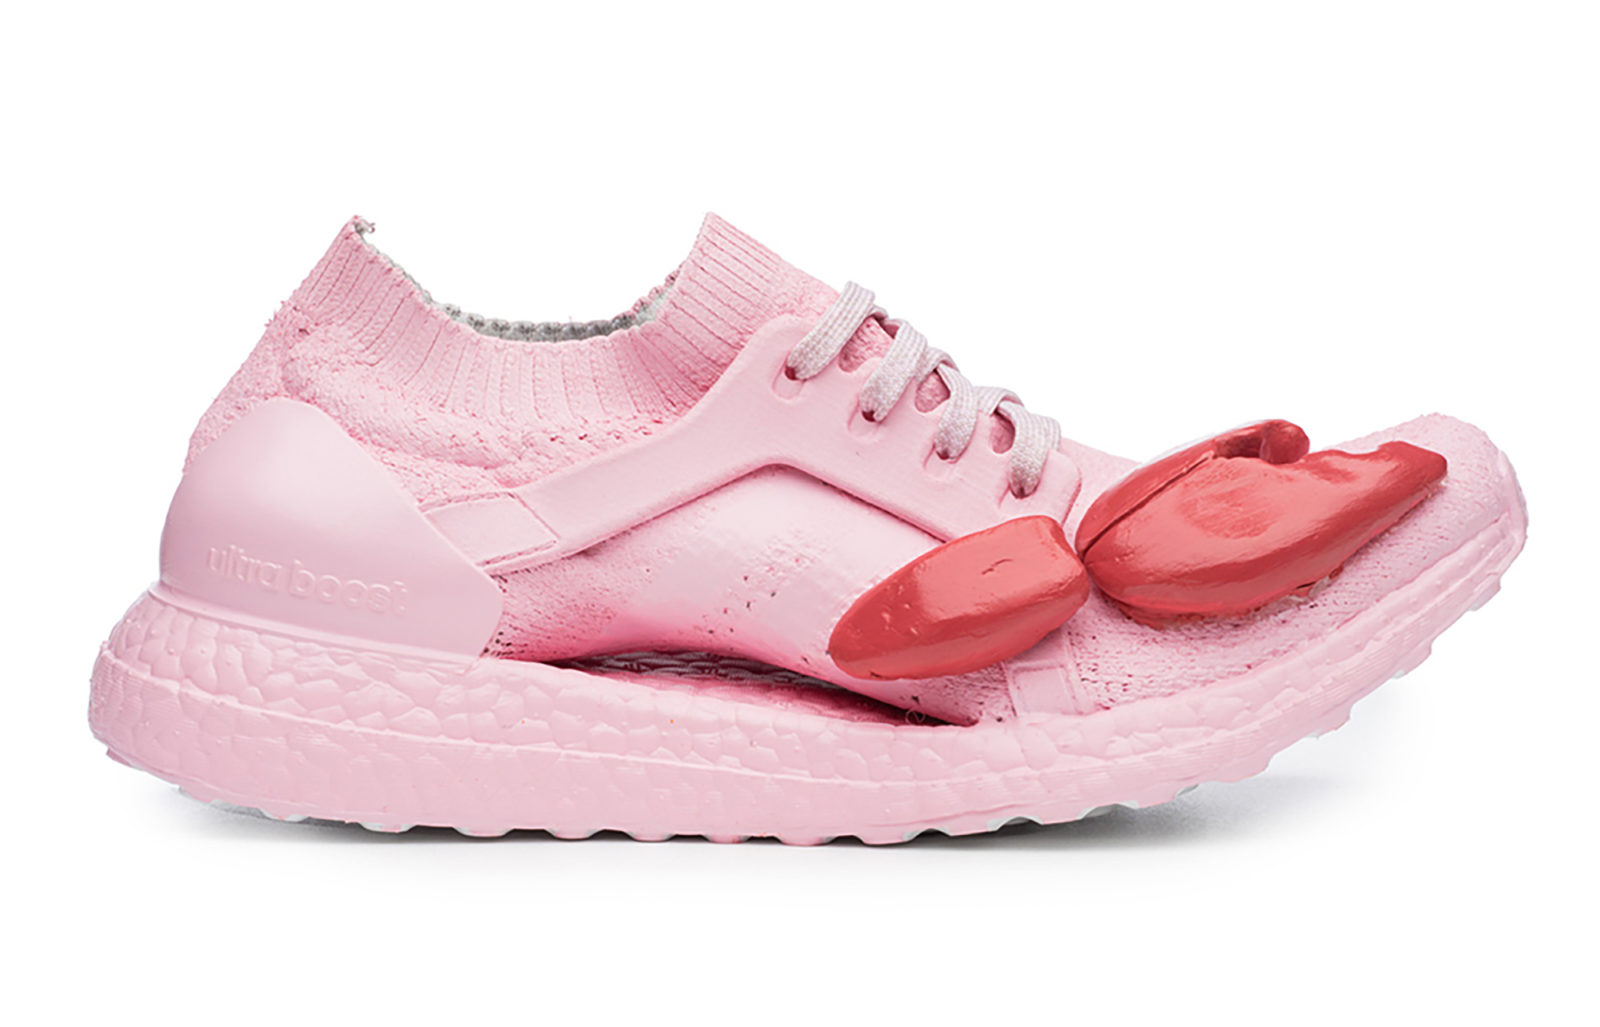 Fotografia reklamowa ukazując buty firmy Adidas, model Ultraboost w kolorze różowym z czerwonymi szczypcami homara na nosku buta.